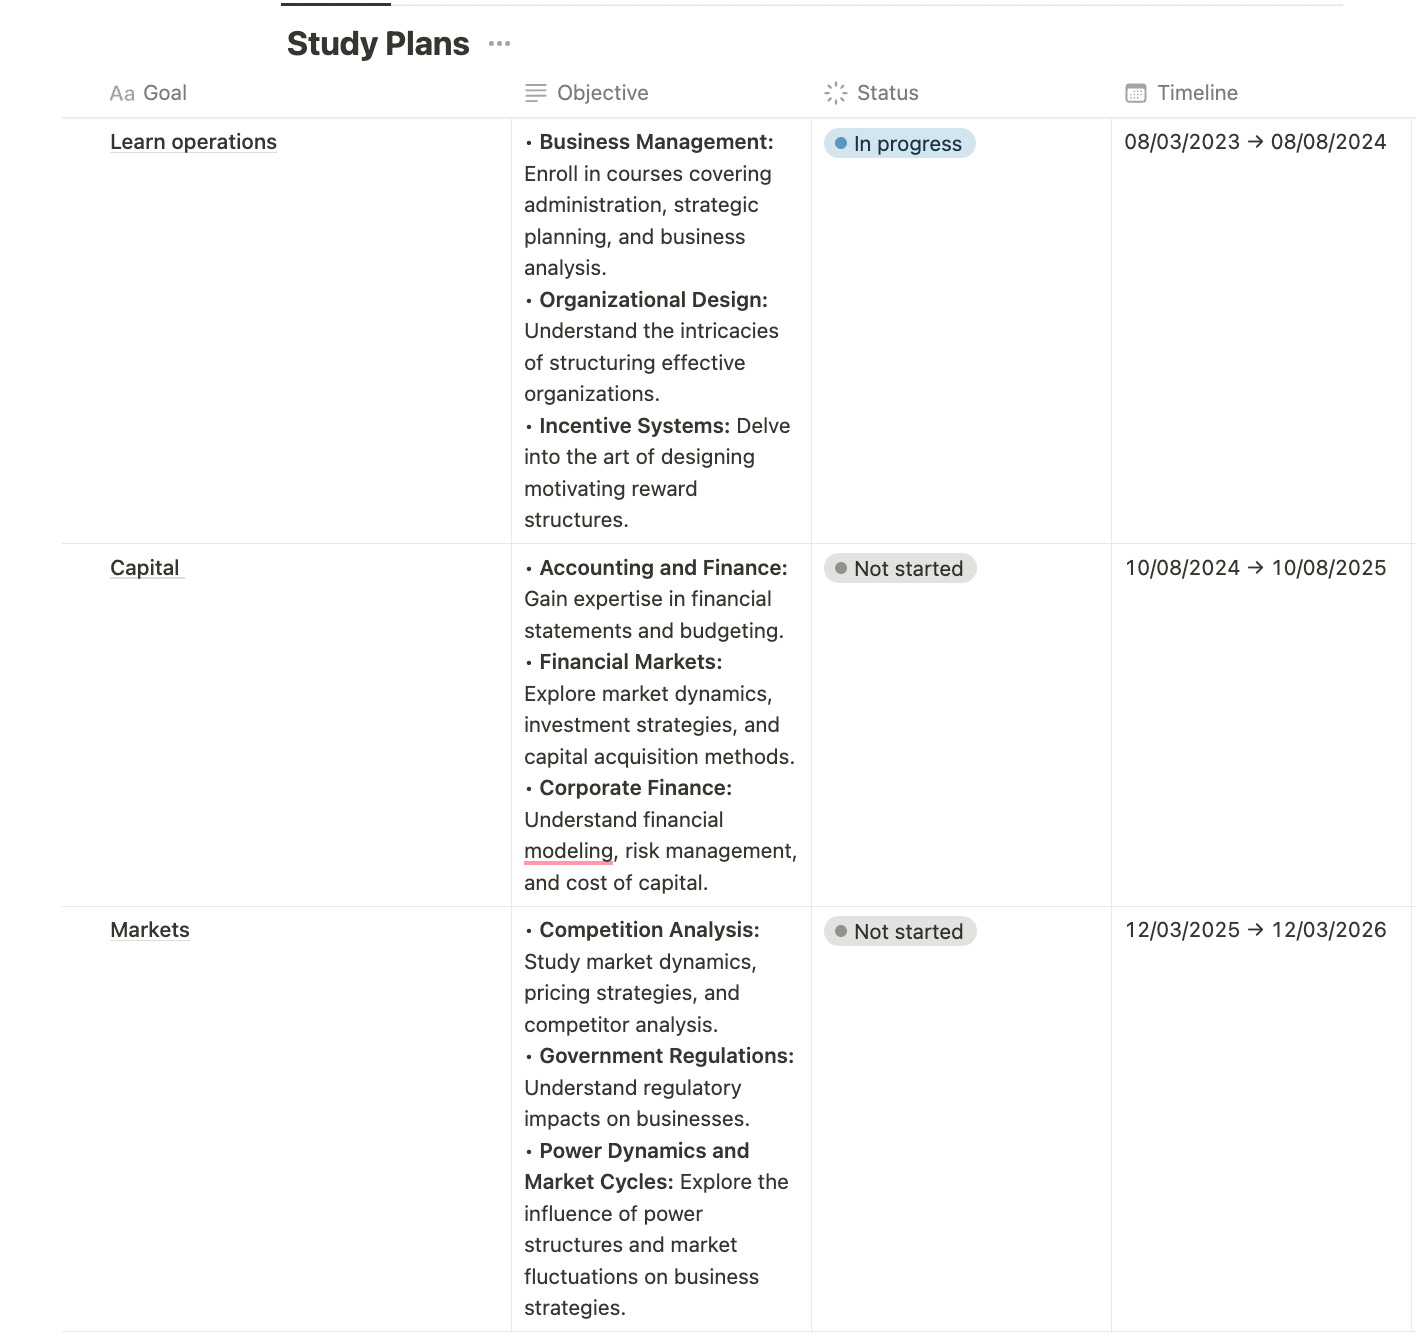 A screenshot of a study schedule